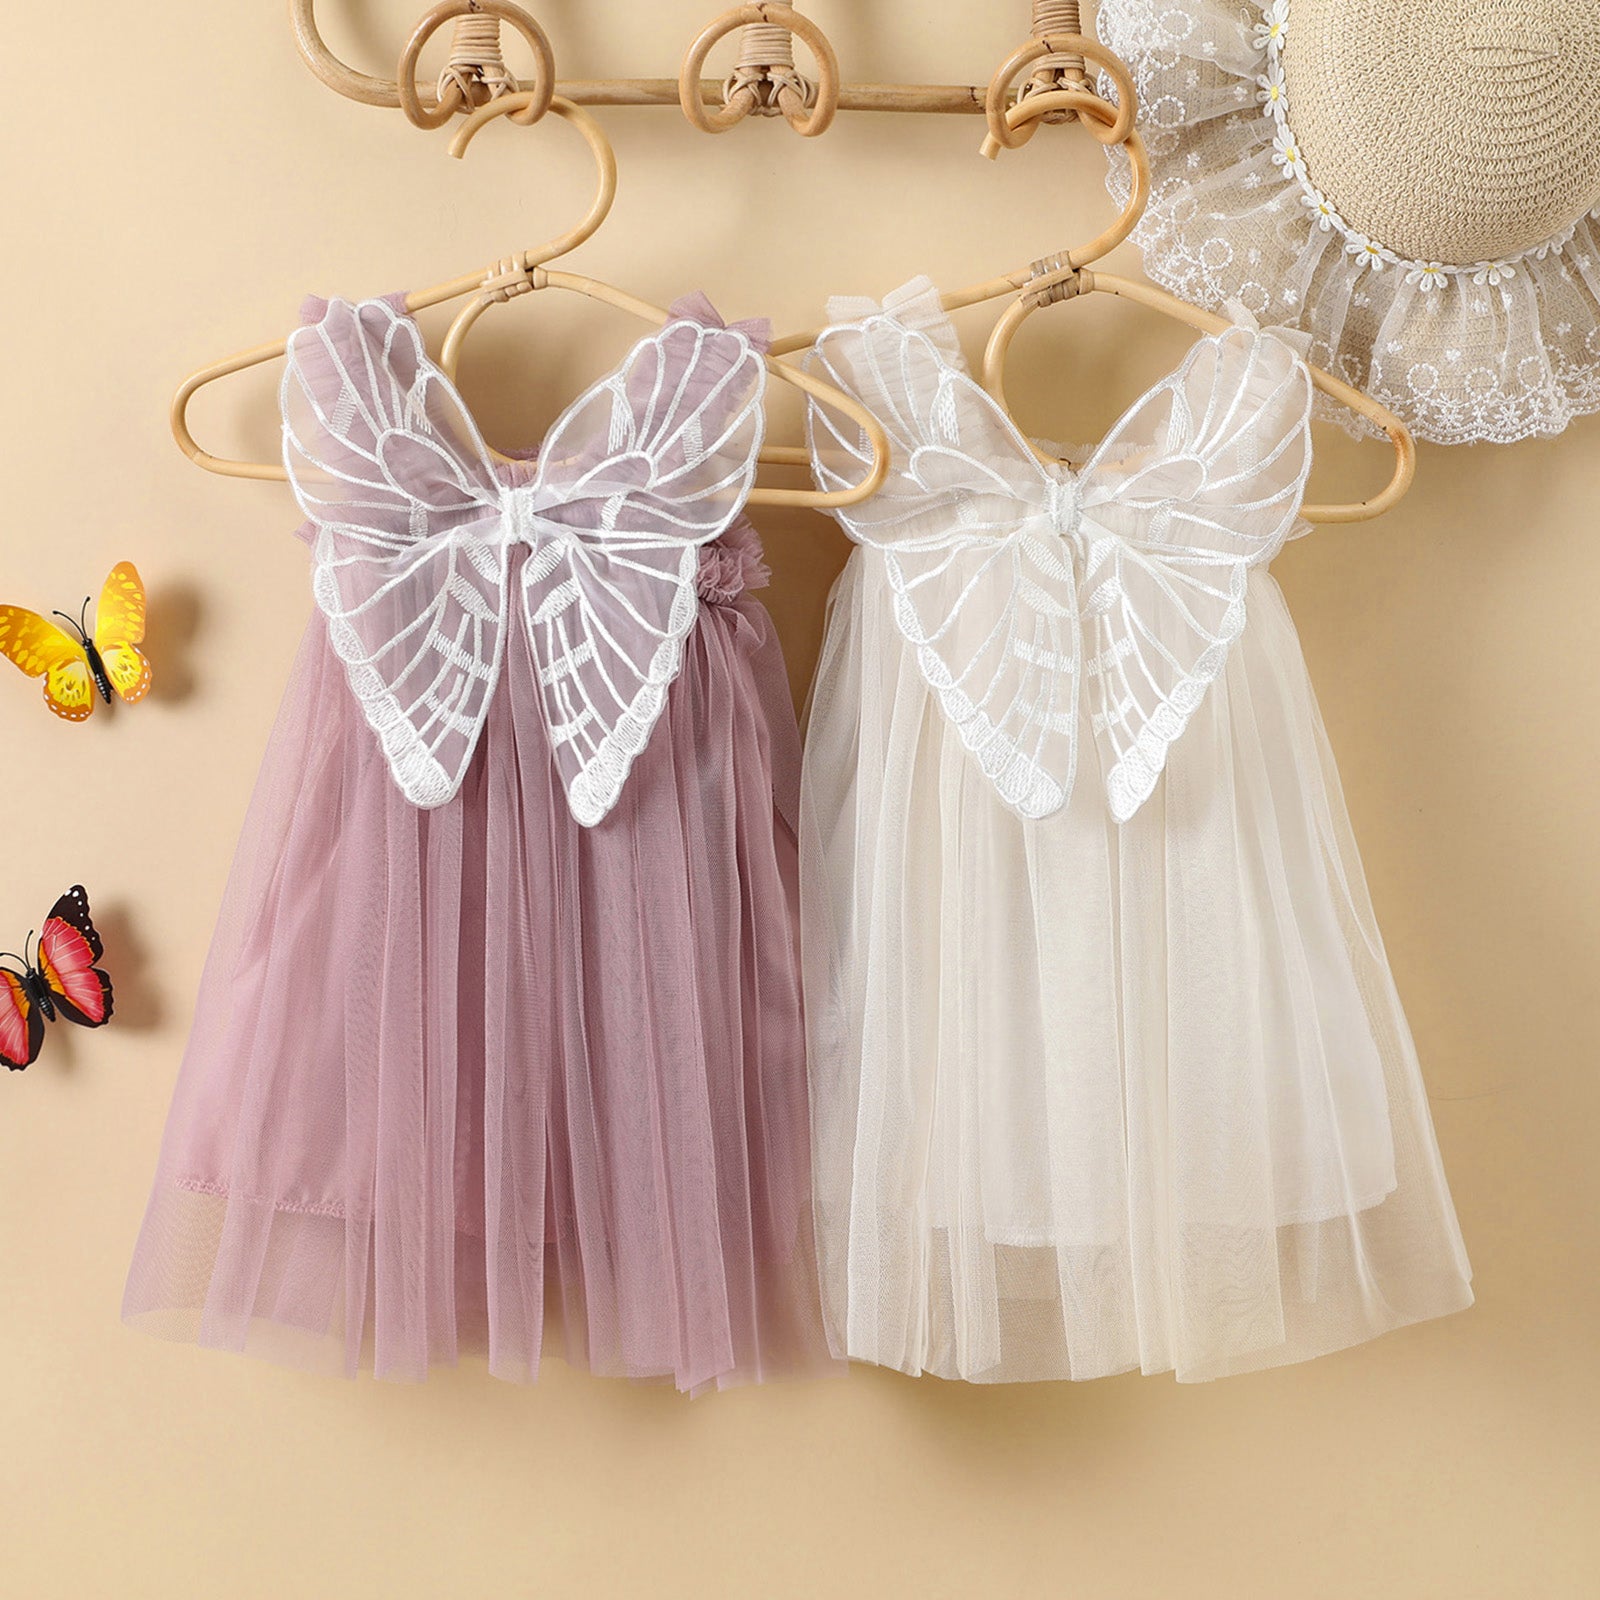 The Feather Fairy Dress (Peach)